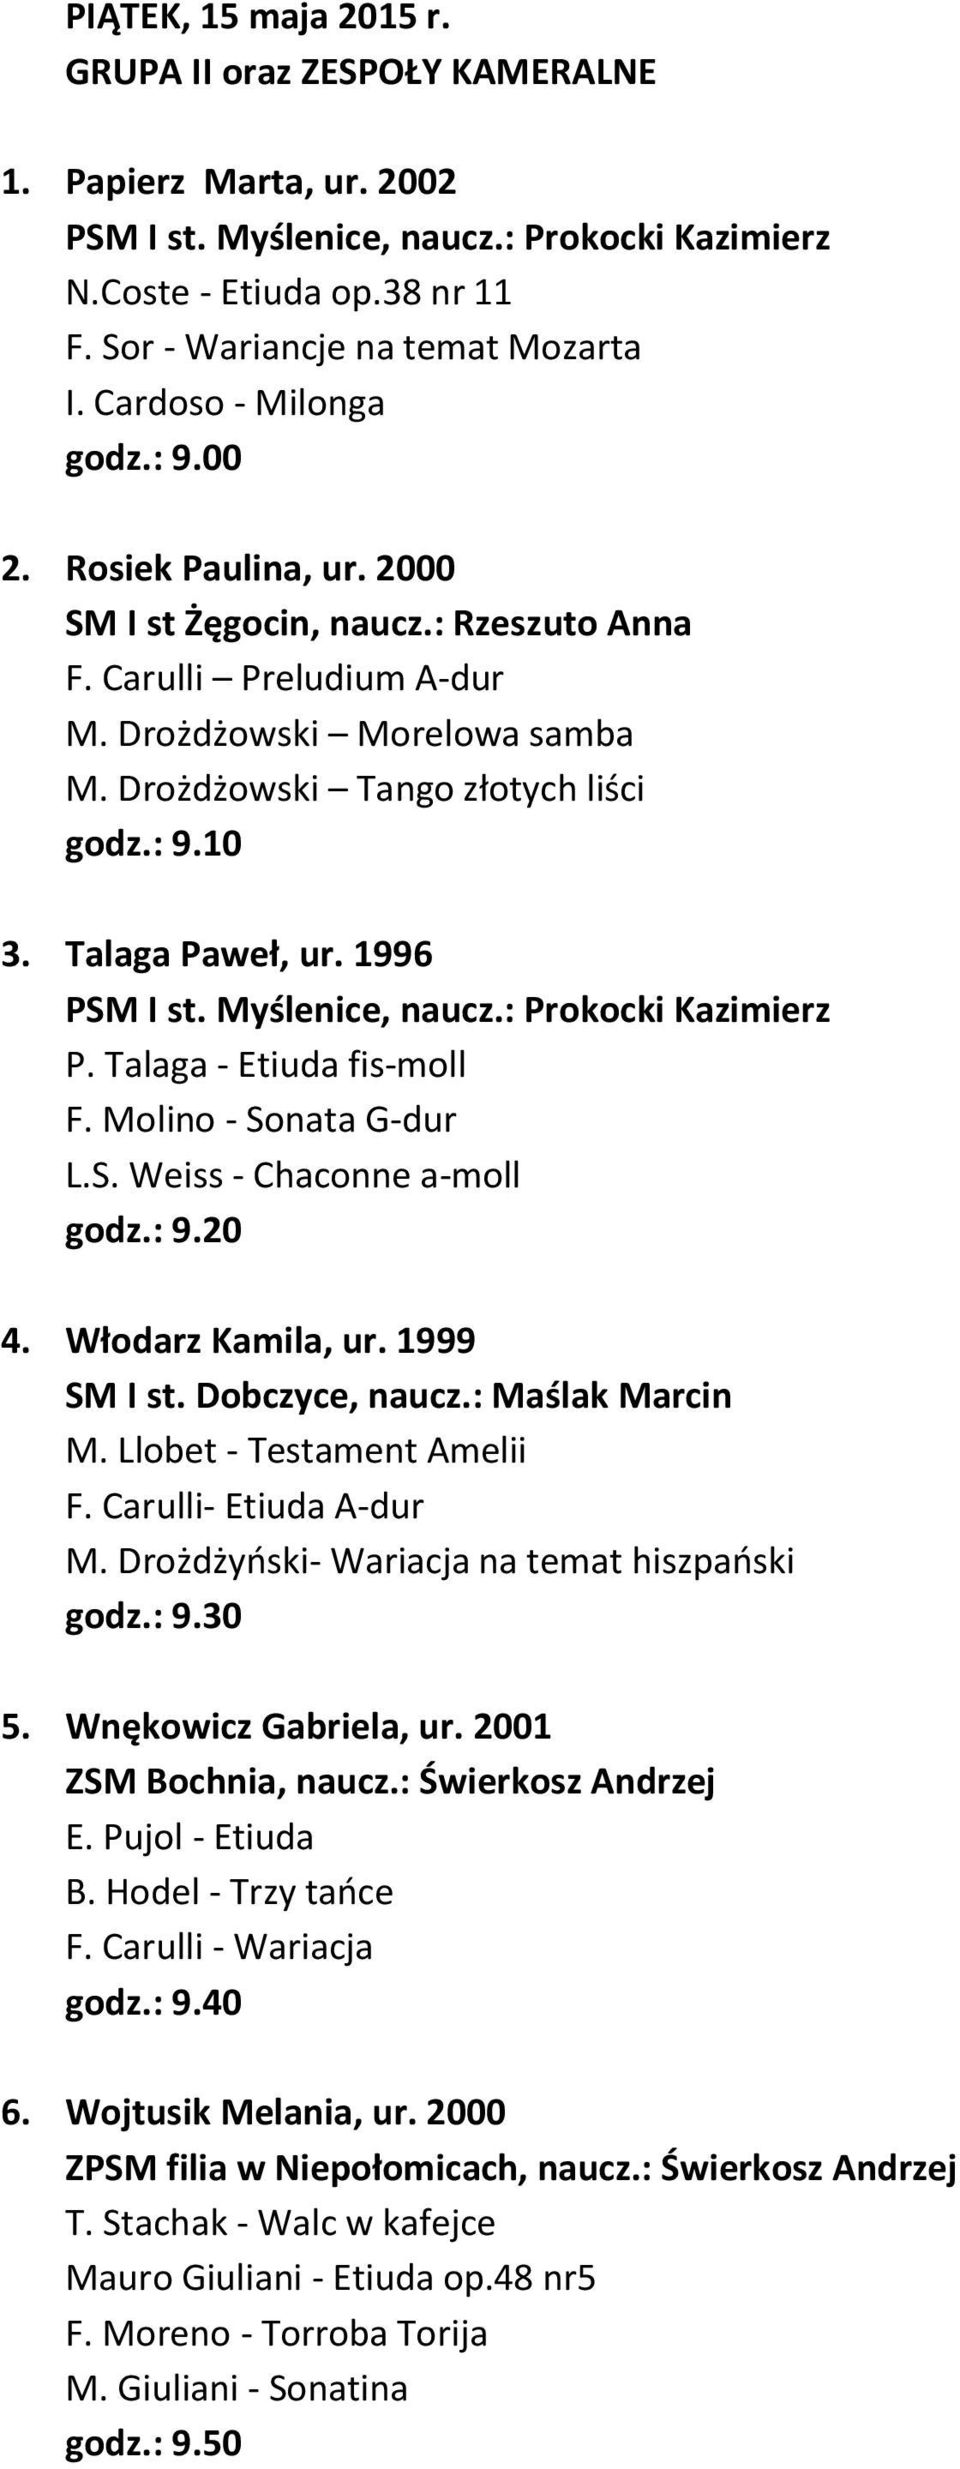 Talaga Paweł, ur. 1996 PSM I st. Myślenice, naucz.: Prokocki Kazimierz P. Talaga - Etiuda fis-moll F. Molino - Sonata G-dur L.S. Weiss - Chaconne a-moll godz.: 9.20 4. Włodarz Kamila, ur.